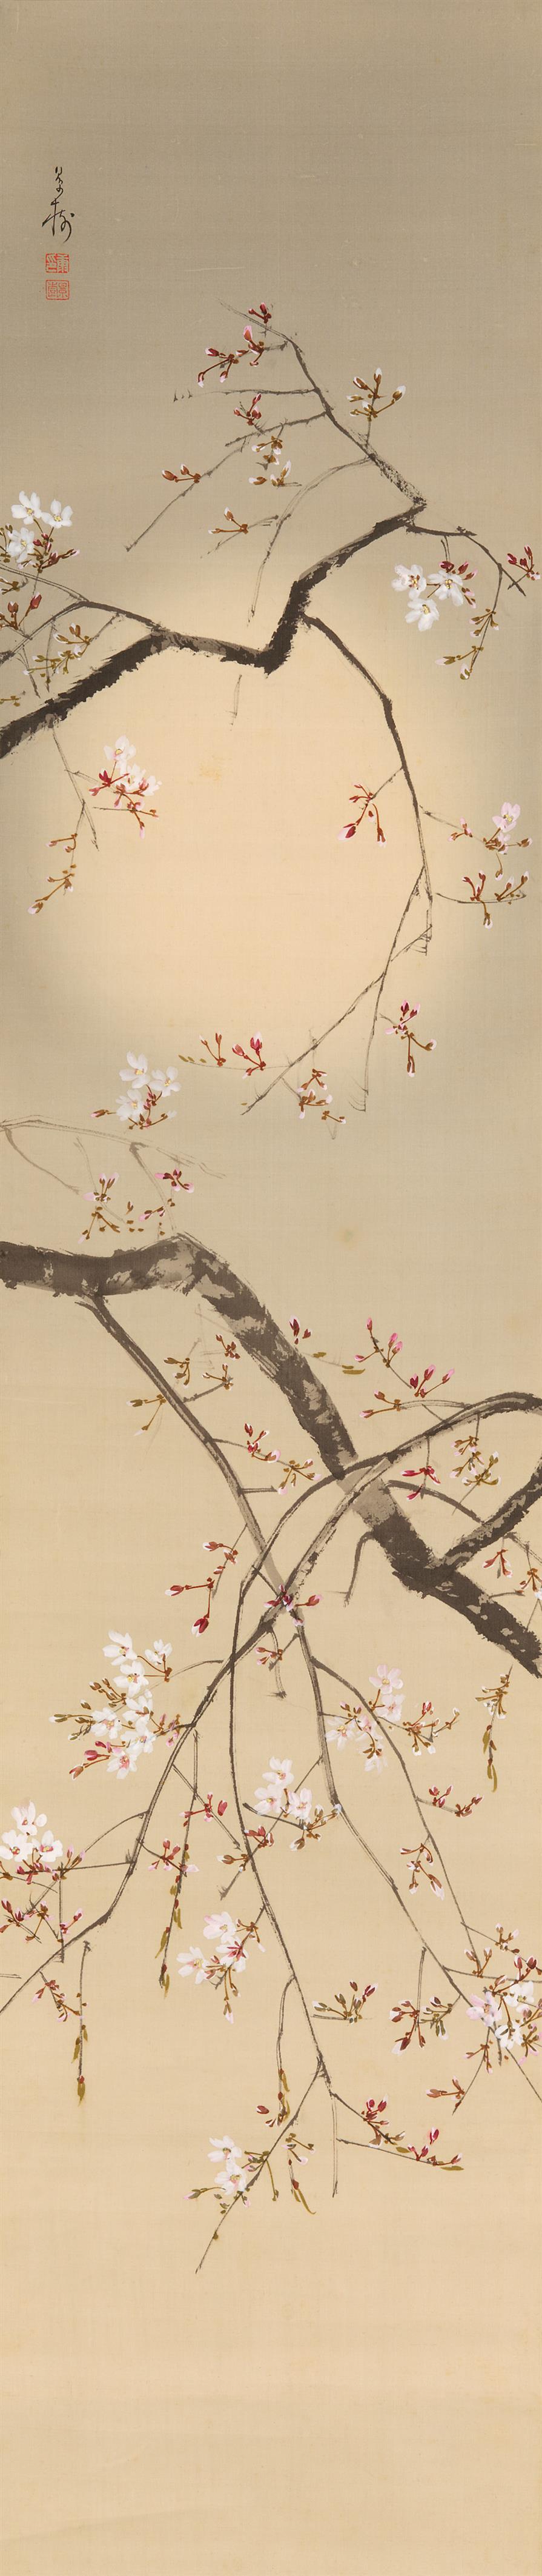 Kirschblütenzweige und ein verhangener Vollmond - image-1